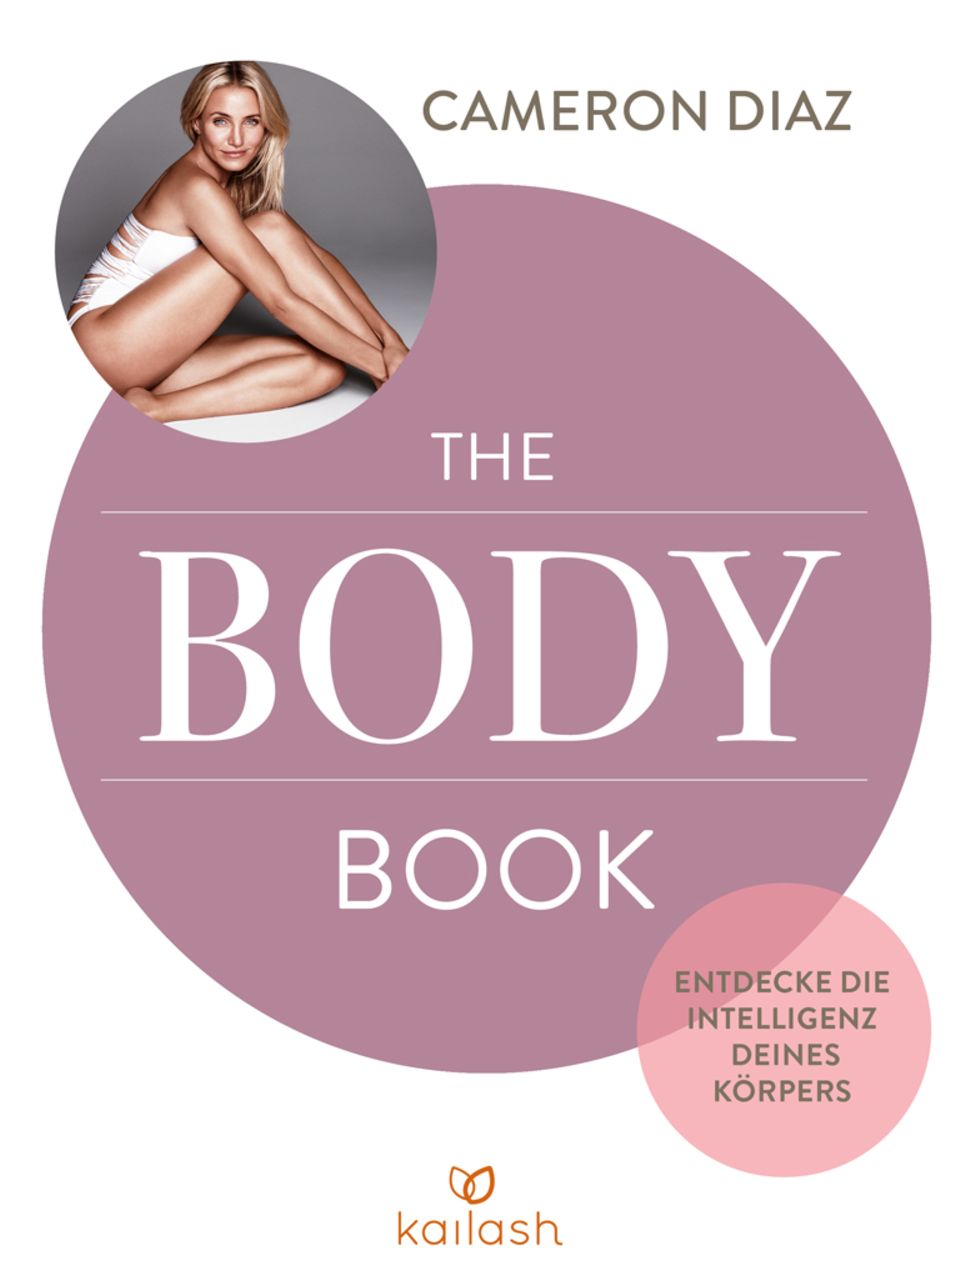 Persönliche Fitness-Tipps von Cameron Diaz: Das "Body Book" (Kailash Verlag, 304 S., 19,99 Euro)